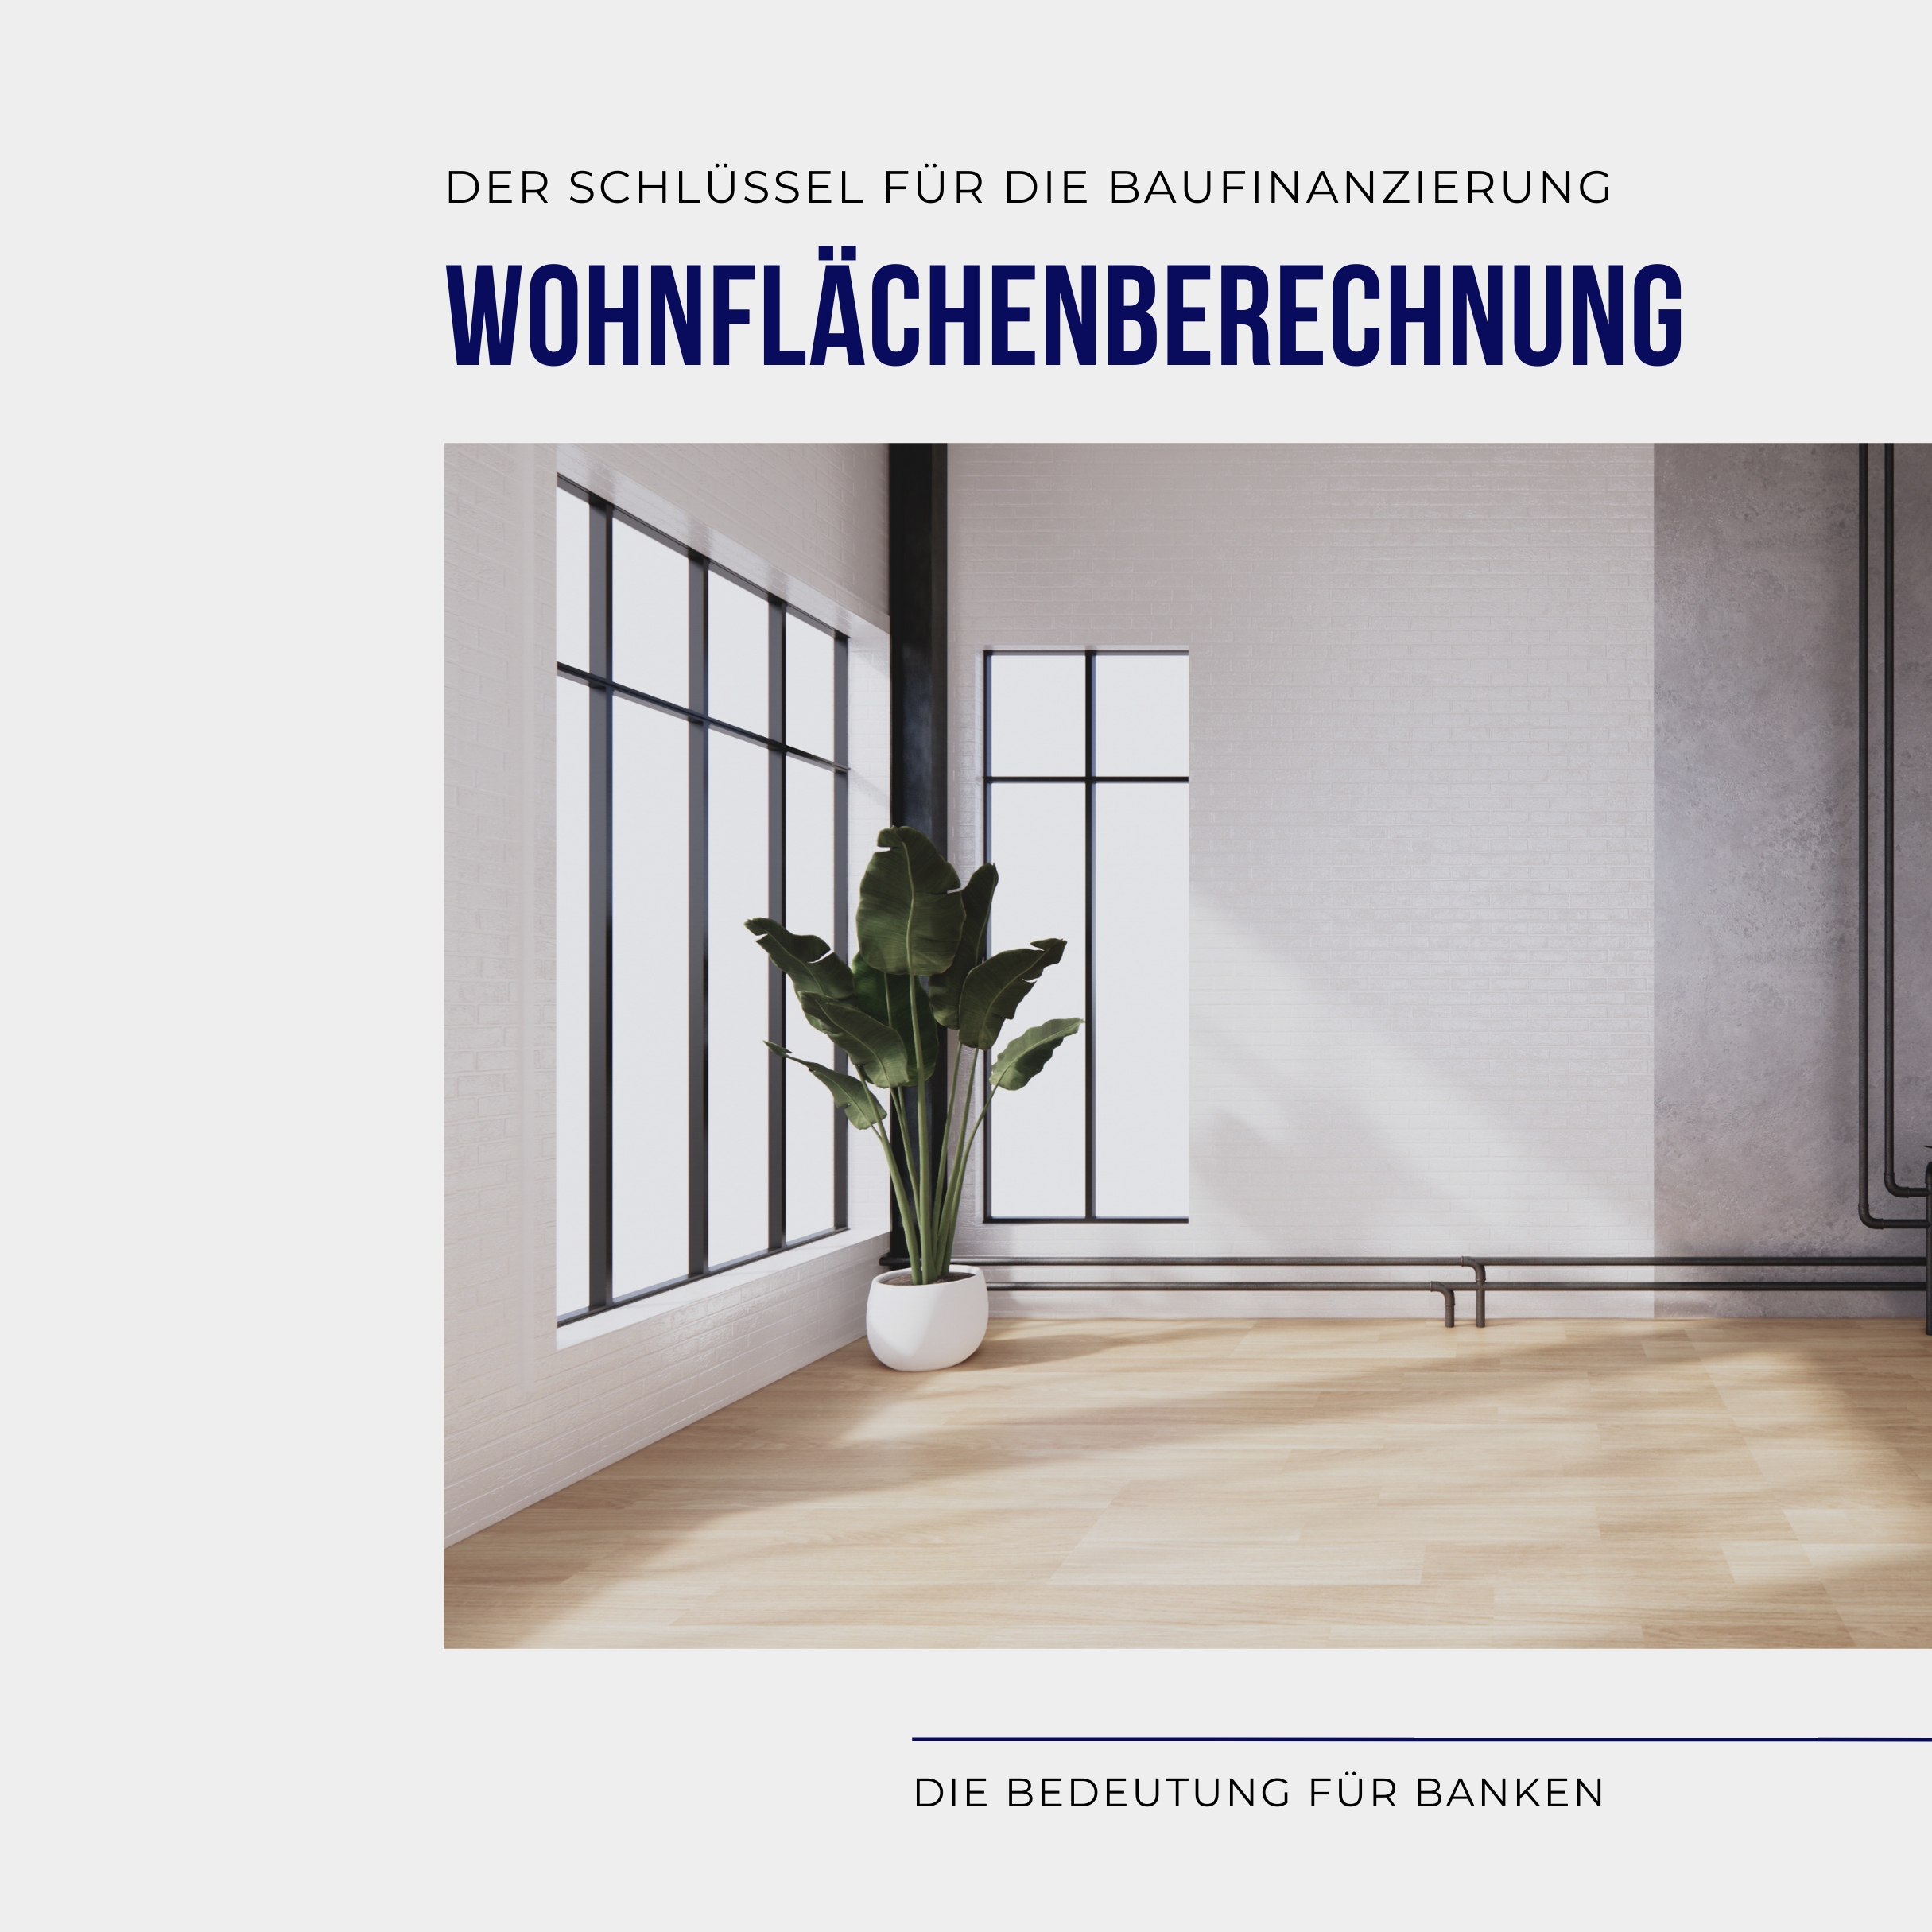 Wohnflächenberechnung - Schlüssel für die Baufinanzierung, Baufinanzierung für die Region Karlsruhe, Ettlingen & Bruchsal